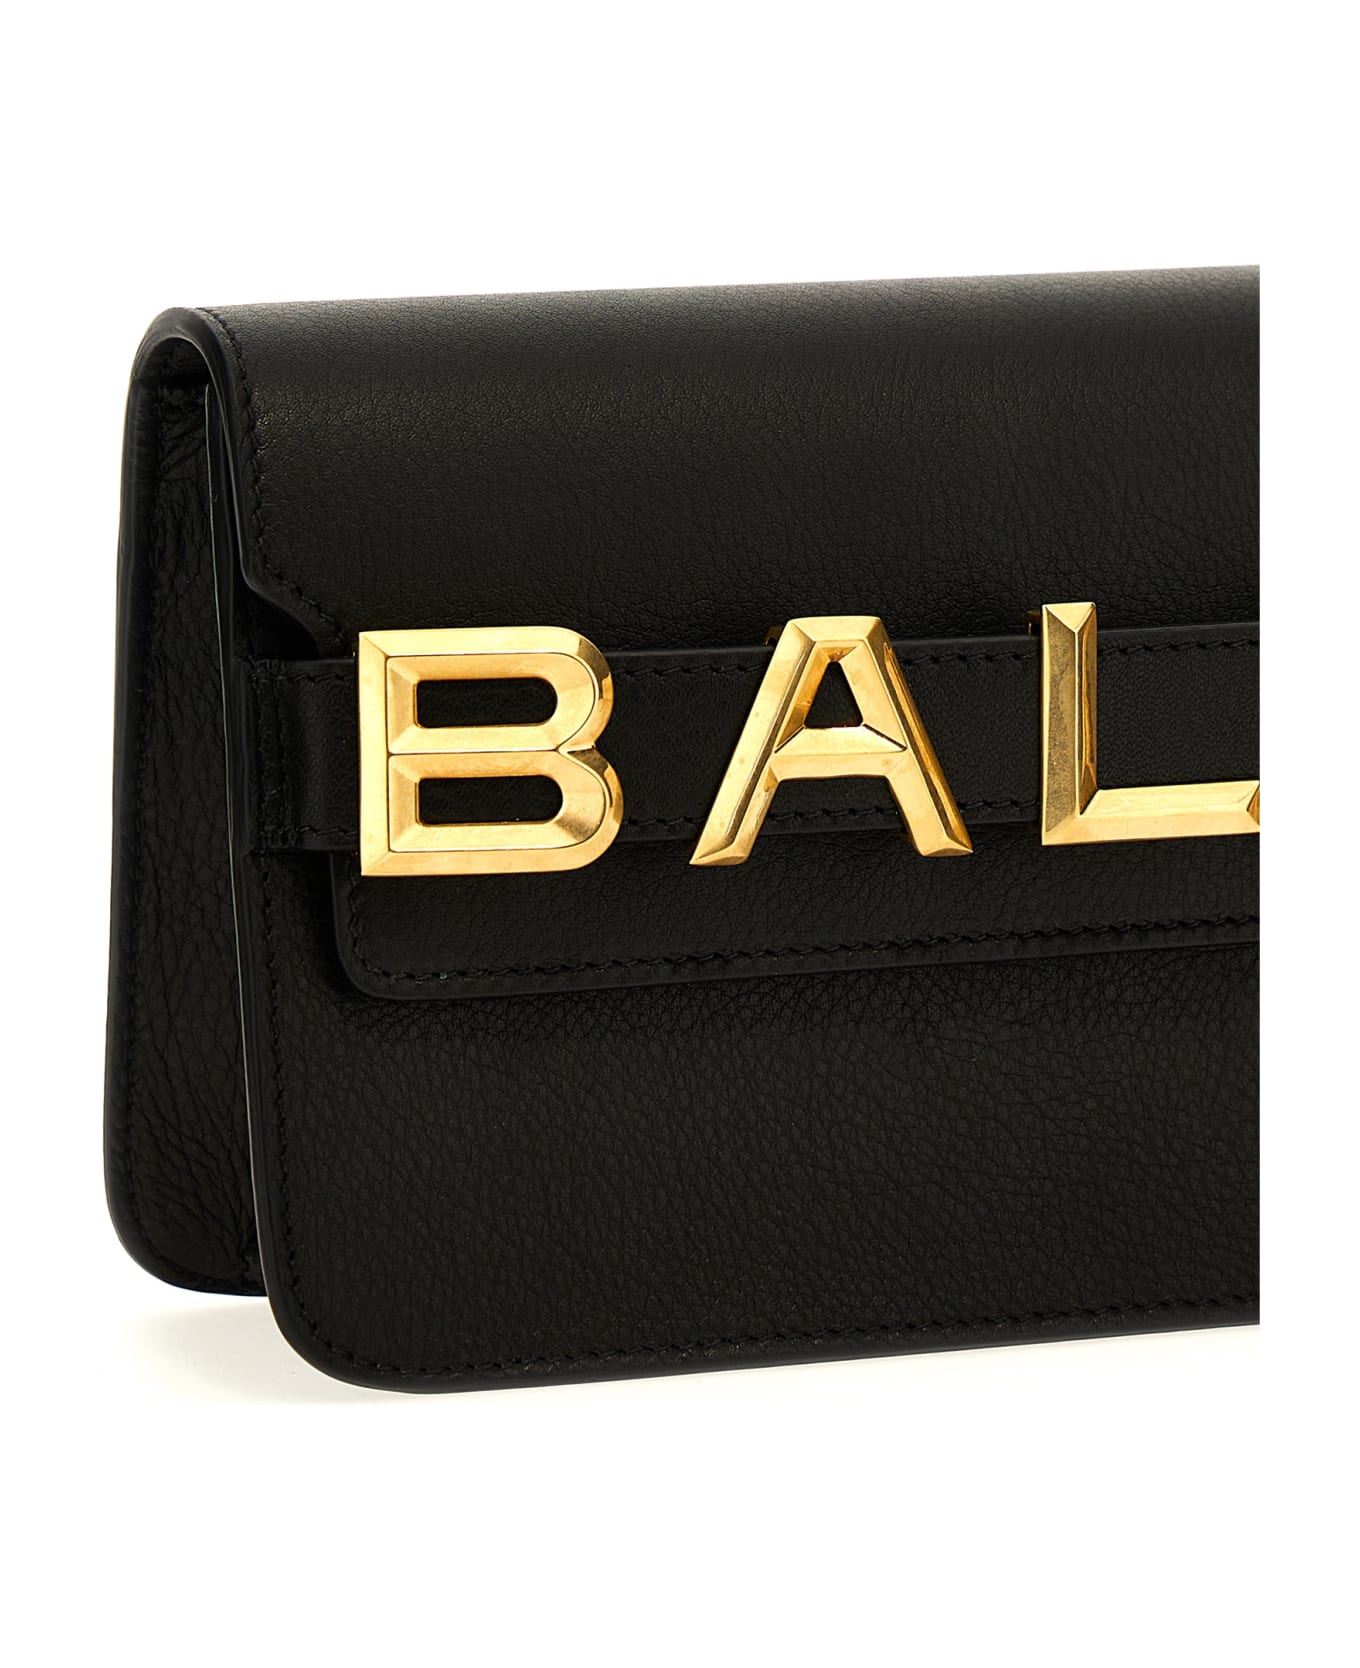 Bally Logo Crossbody Bag - Black   クラッチバッグ